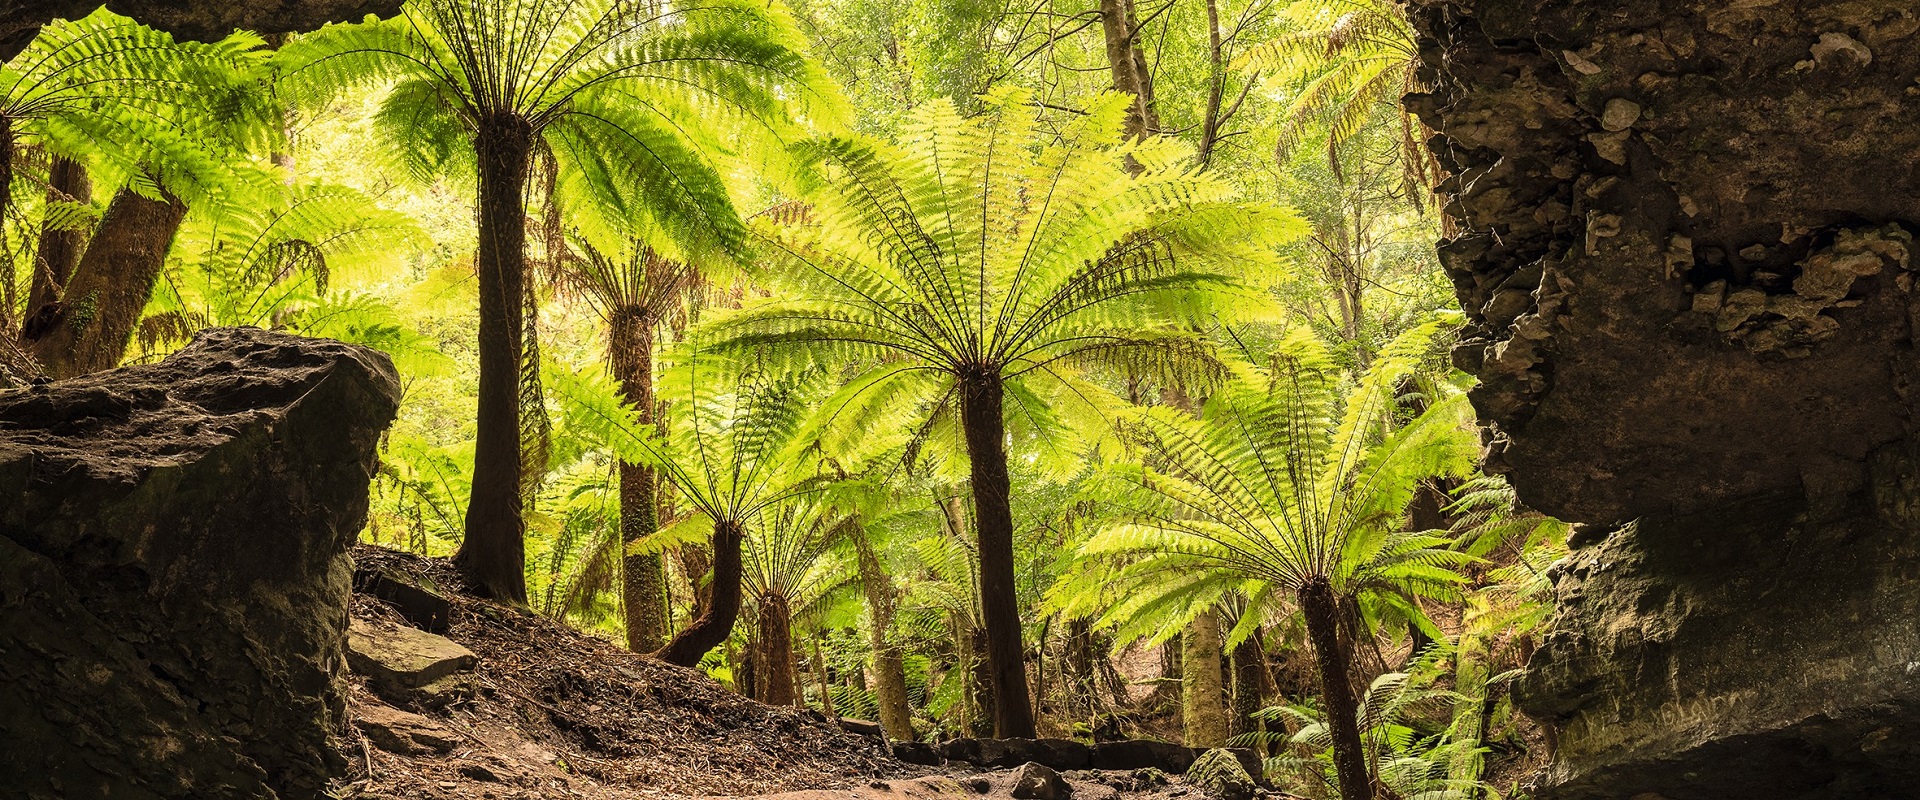 Tarkine Rainforest, Tasmania.